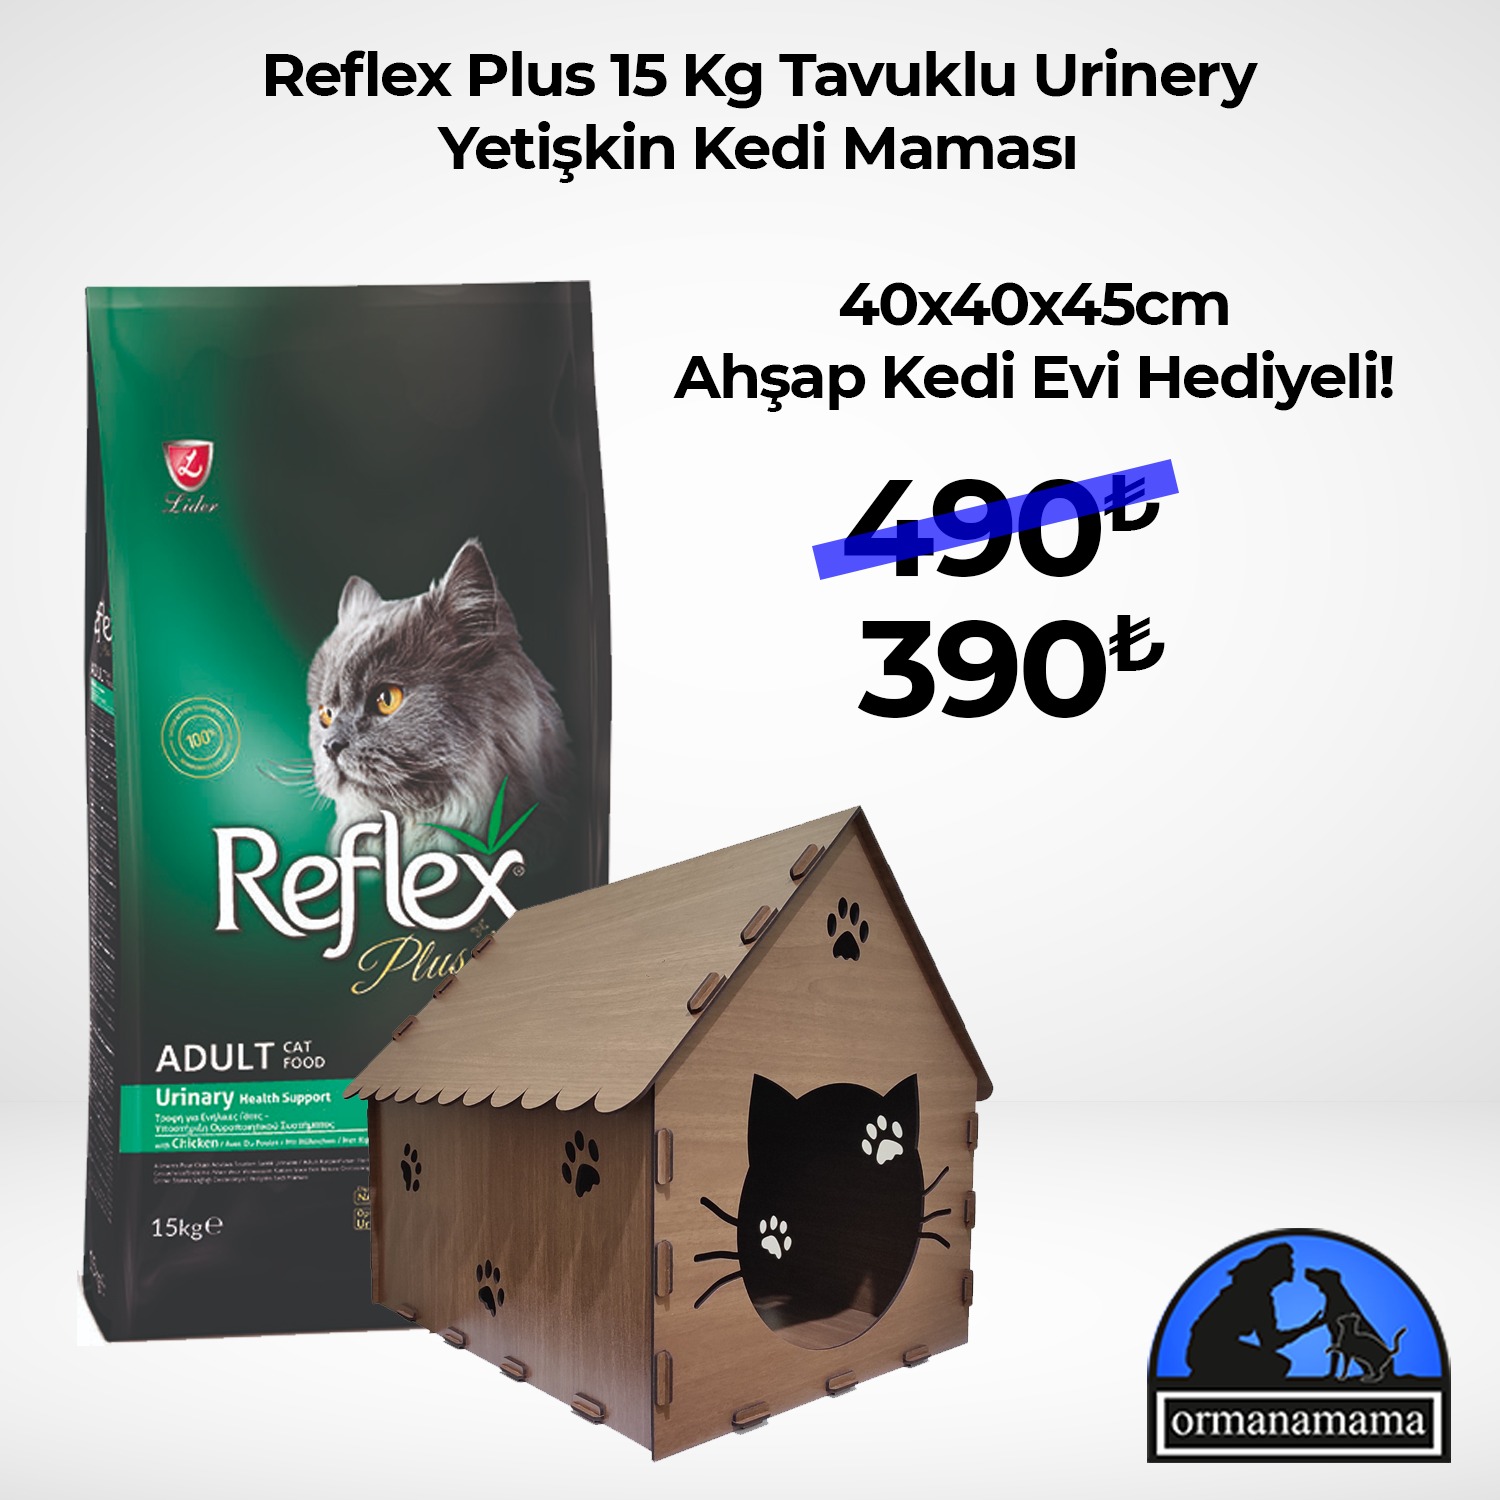 Reflex Plus Urinary 15 Kg Yetişkin Kedi Maması + Ahşap Kedi Evi Hediyeli